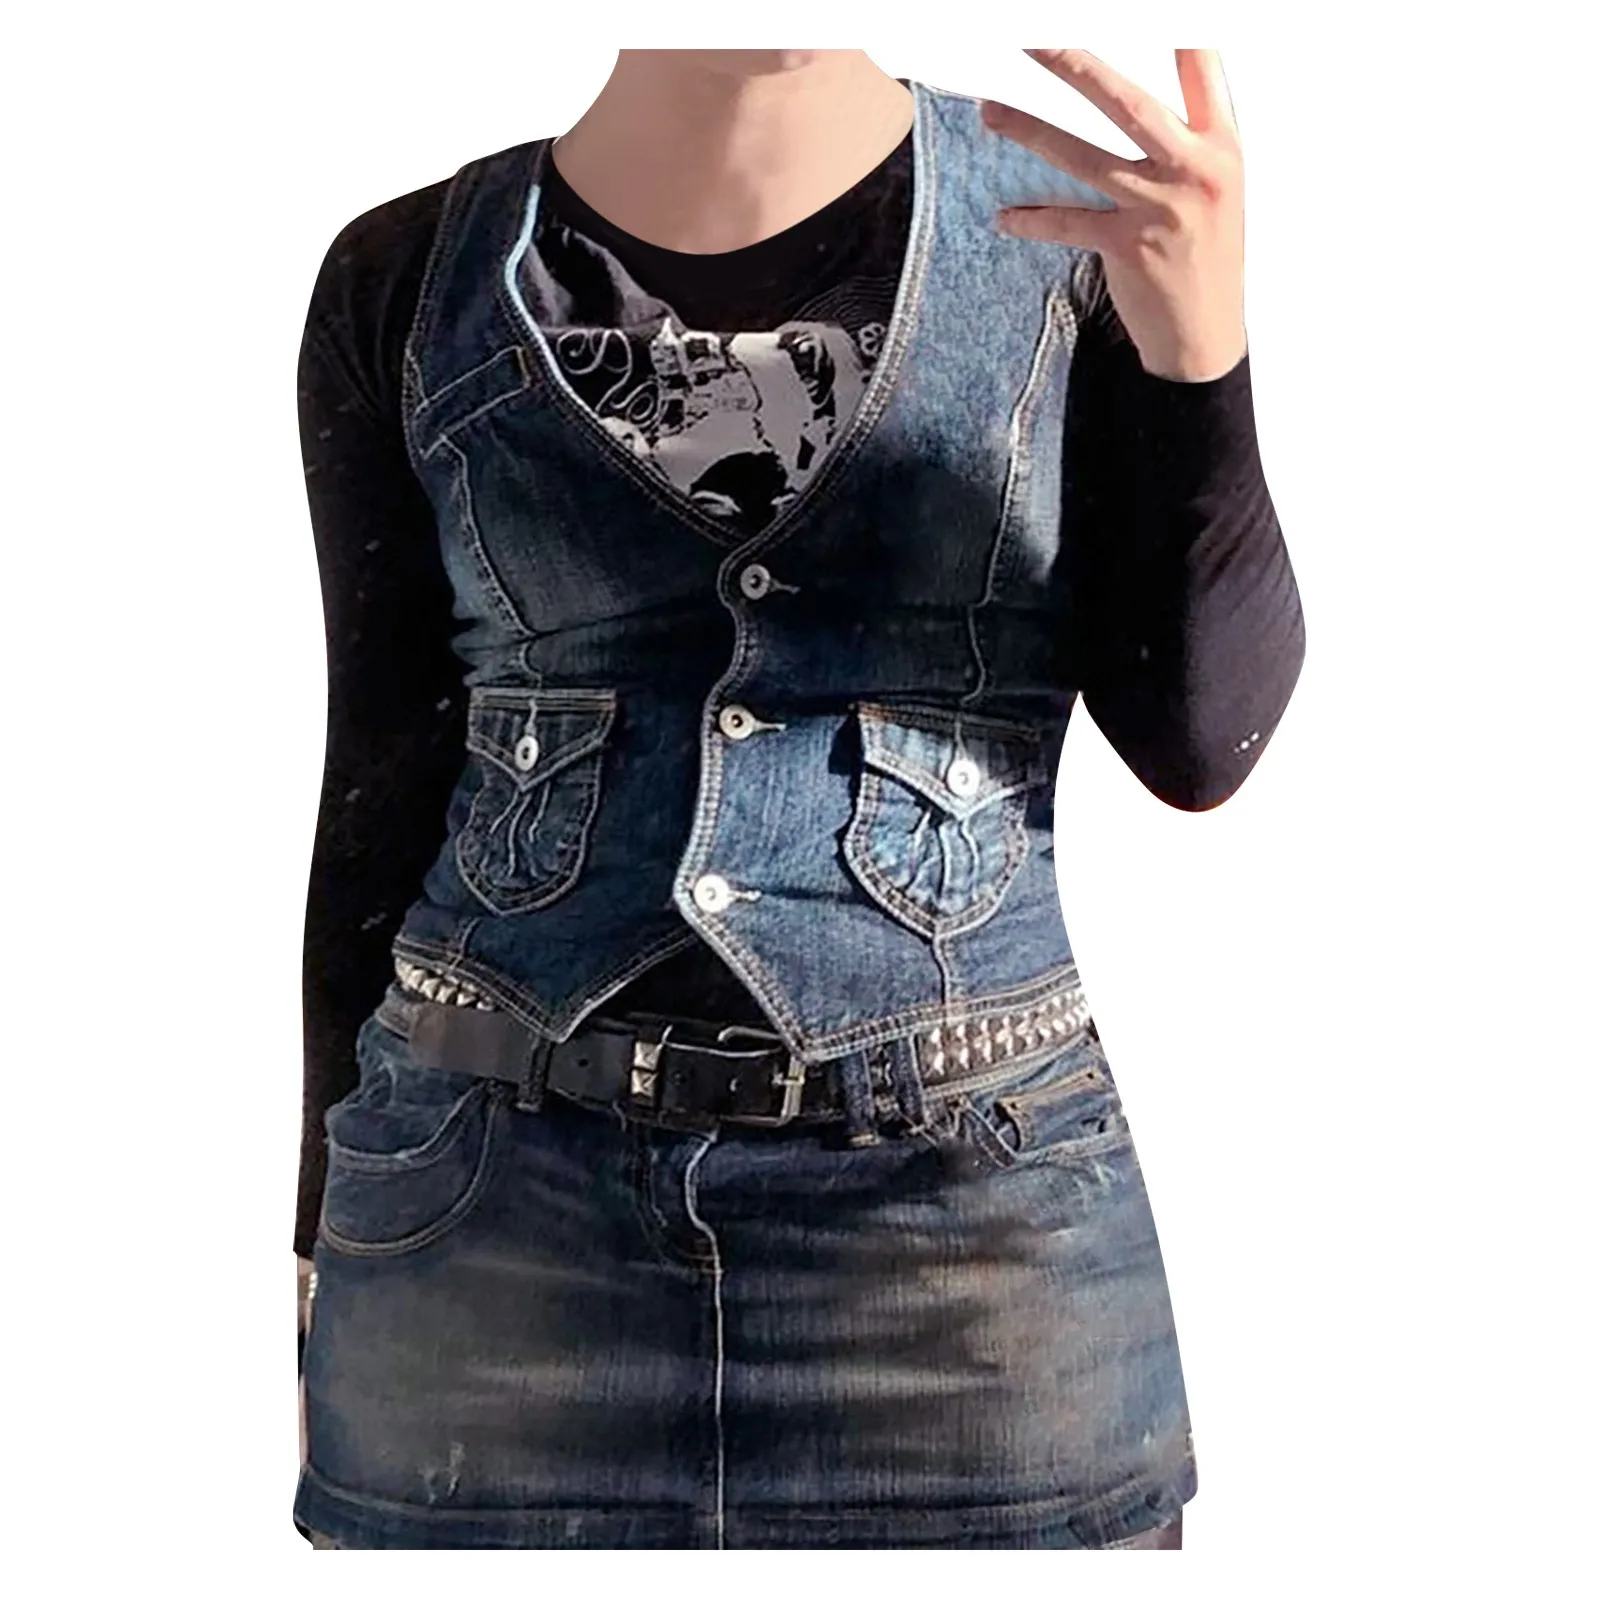 Y2K Denim Vest cropped denim jacket Corset Top Buttons V Neck Vintage Streetwear Women Grunge Aesthetic Tanks Top Summer Clothes